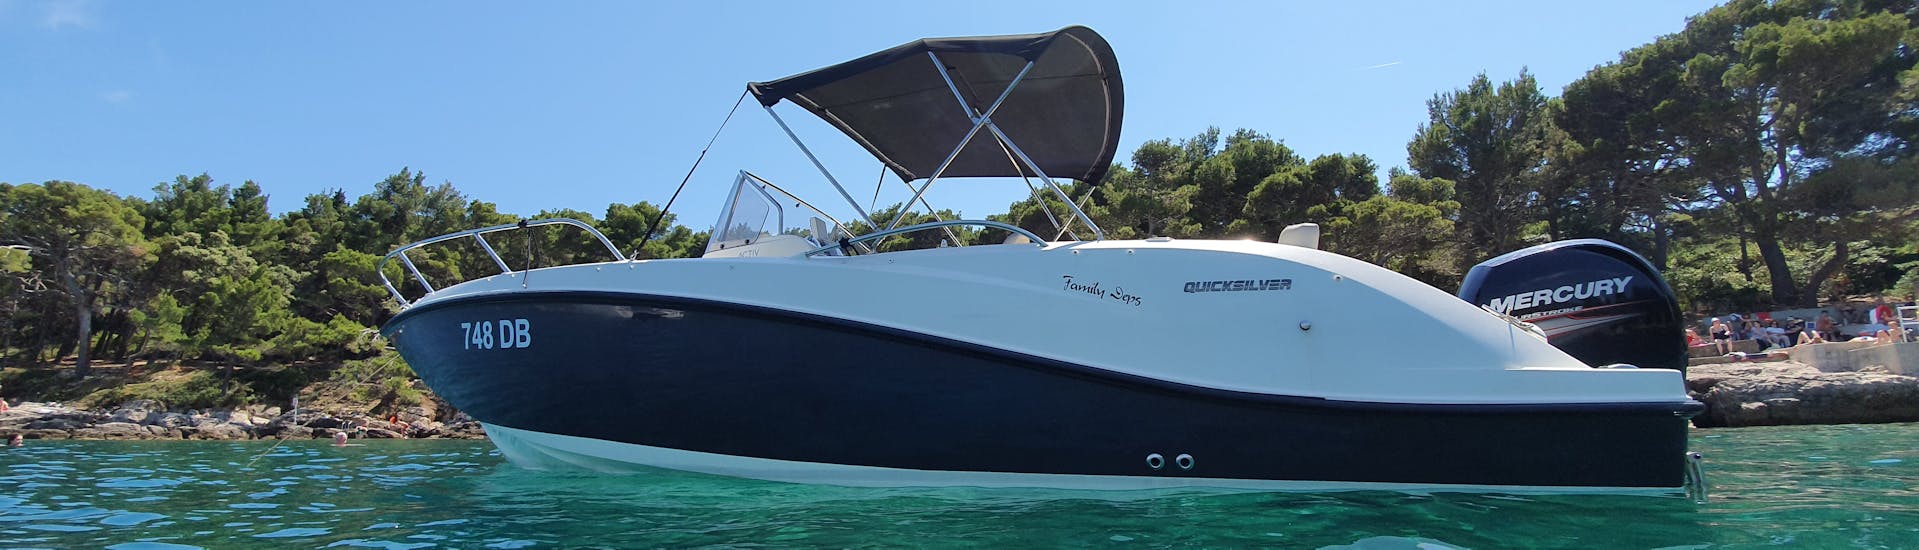 Unser Boot ist auf dem Wasser und bereit für Sie während der Private Boat (6 pax) zu Elaphiti Inseln mit Schnorcheln mit Explore Dubrovnik by Boat.